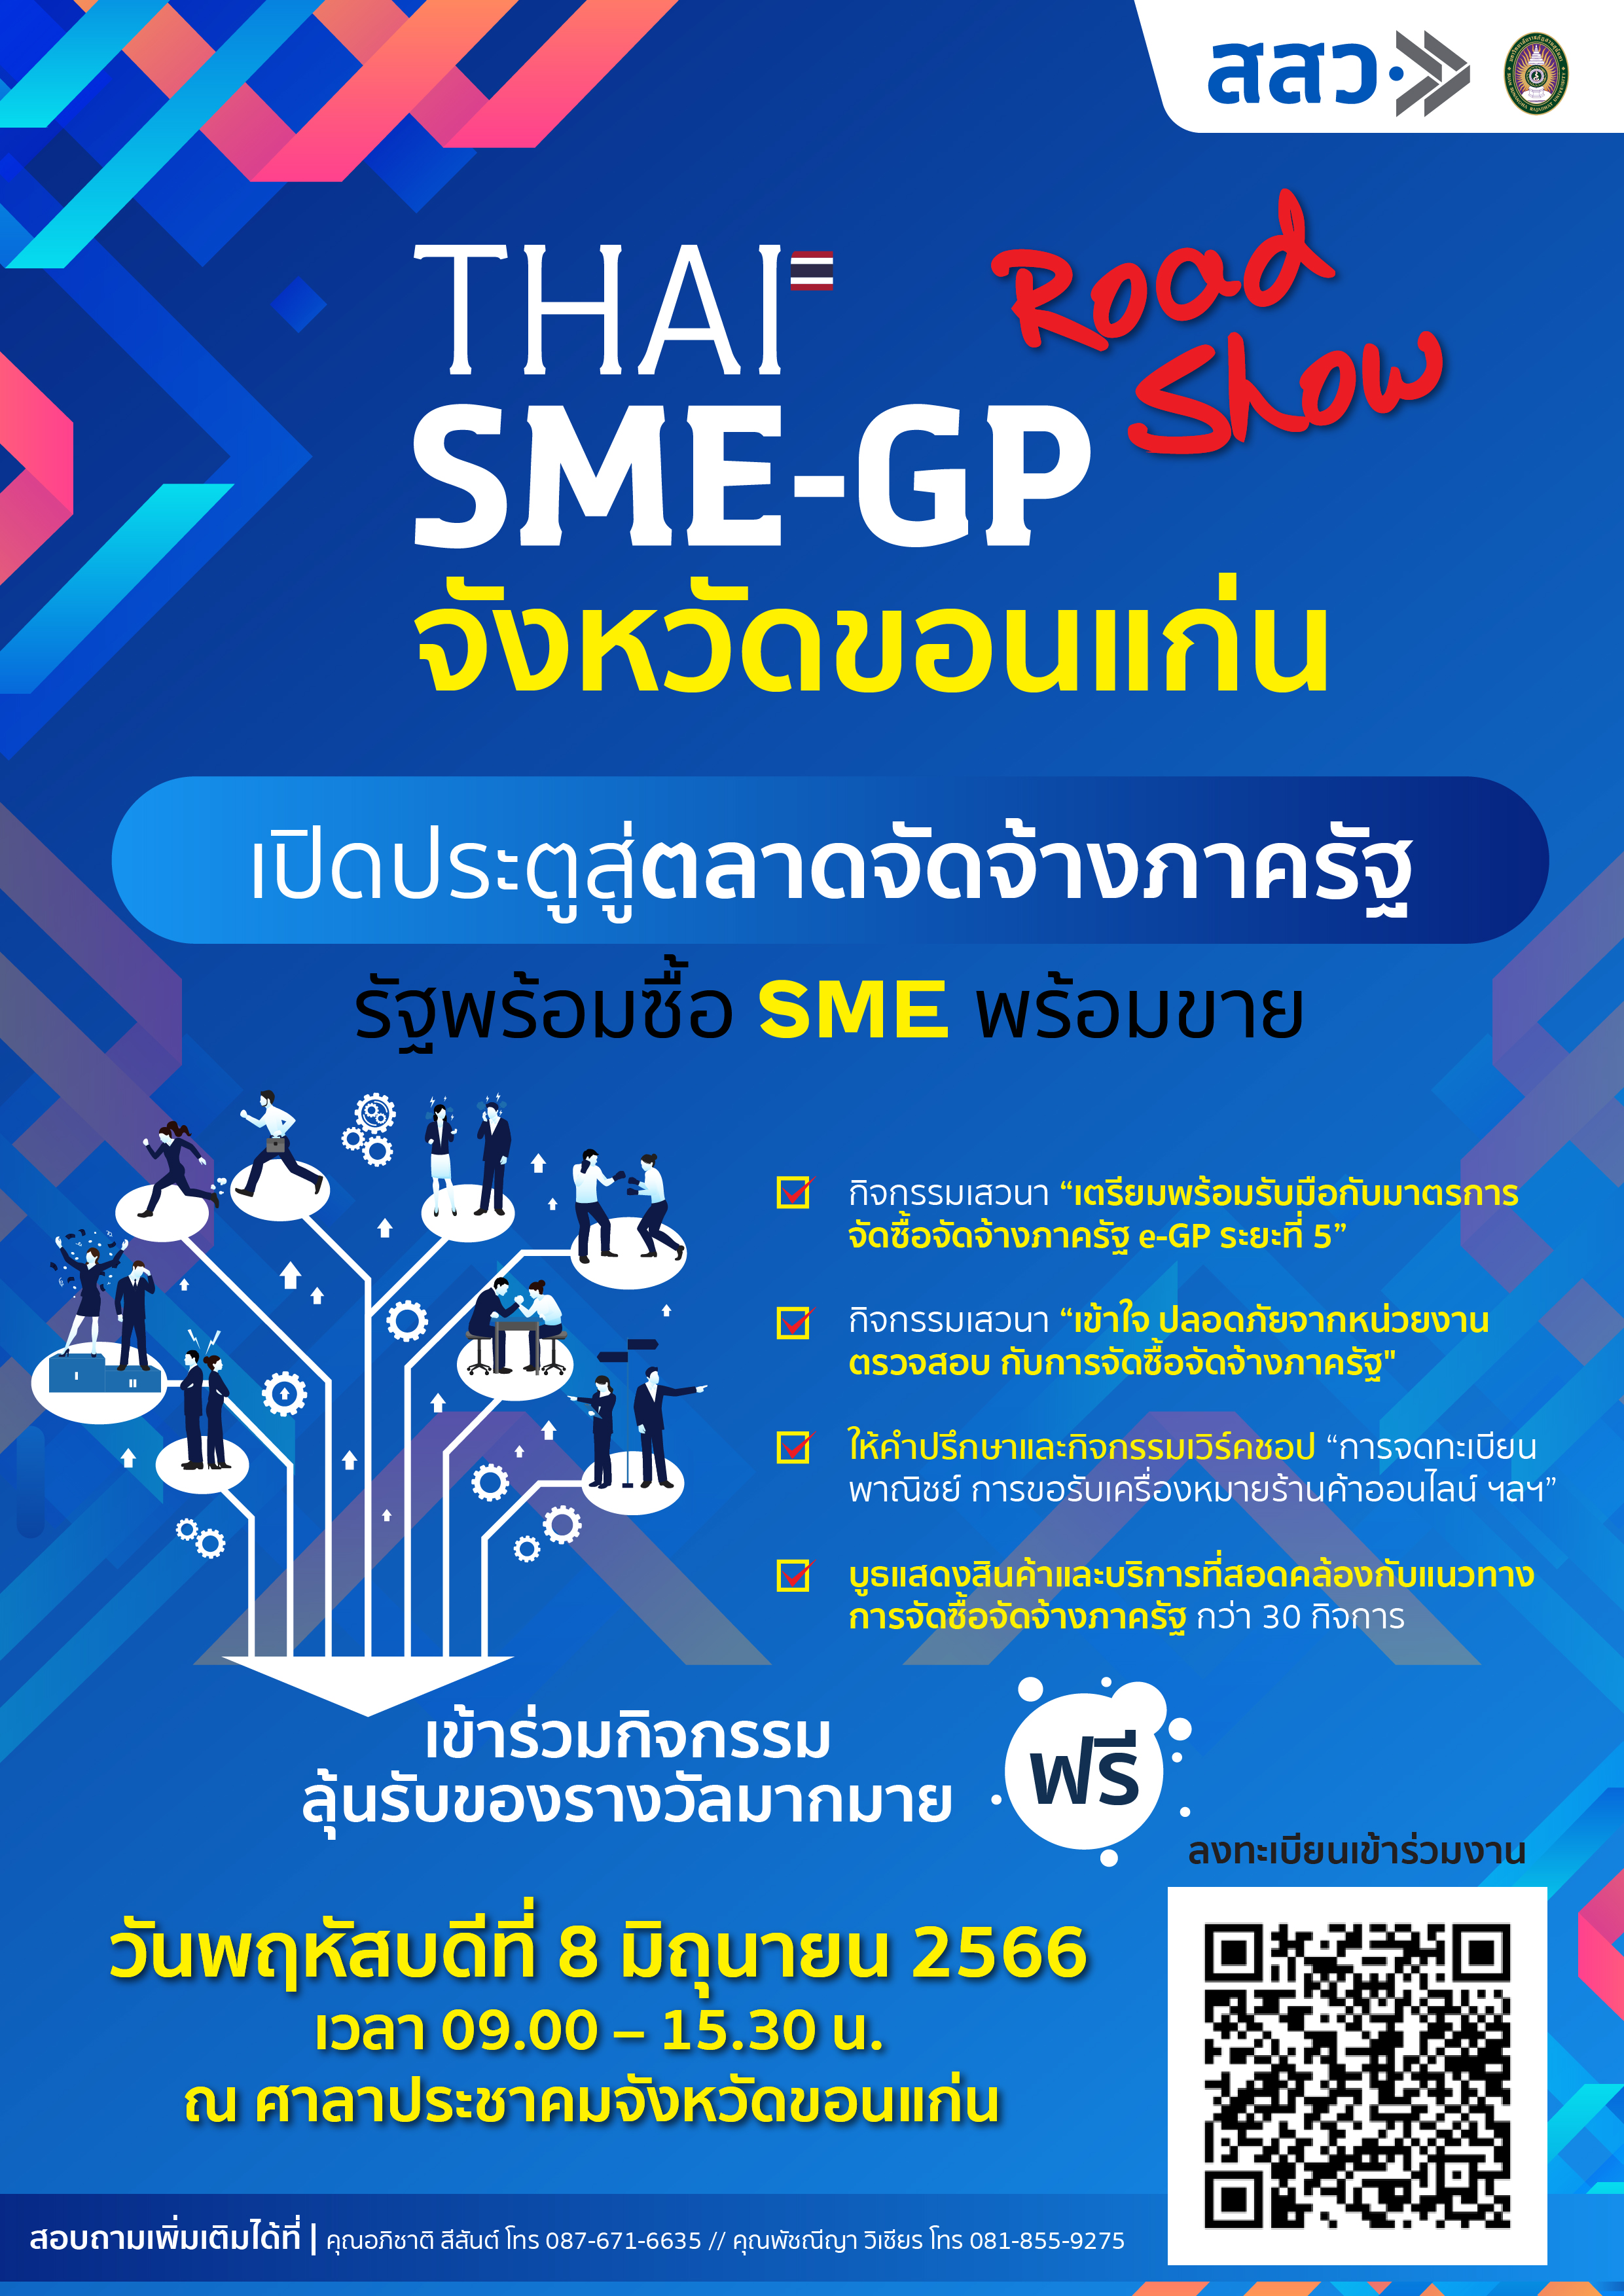 ขอเชิญเข้าร่วมกิจกรรม THAI SME - GP Road Show "รัฐพร้อมซื้อ SME พร้อมขาย"ภายใต้การพัฒนา MSME ให้มีความพร้อมในการเข้าสู่ระบบการจัดซื้อจัดจ้างภาครัฐ เพื่อเพิ่มโอกาสในการรับส่วนแบ่งทางการตลาด กลุ่มจังหวัดภาคตะวันออกเฉียงเหนือ